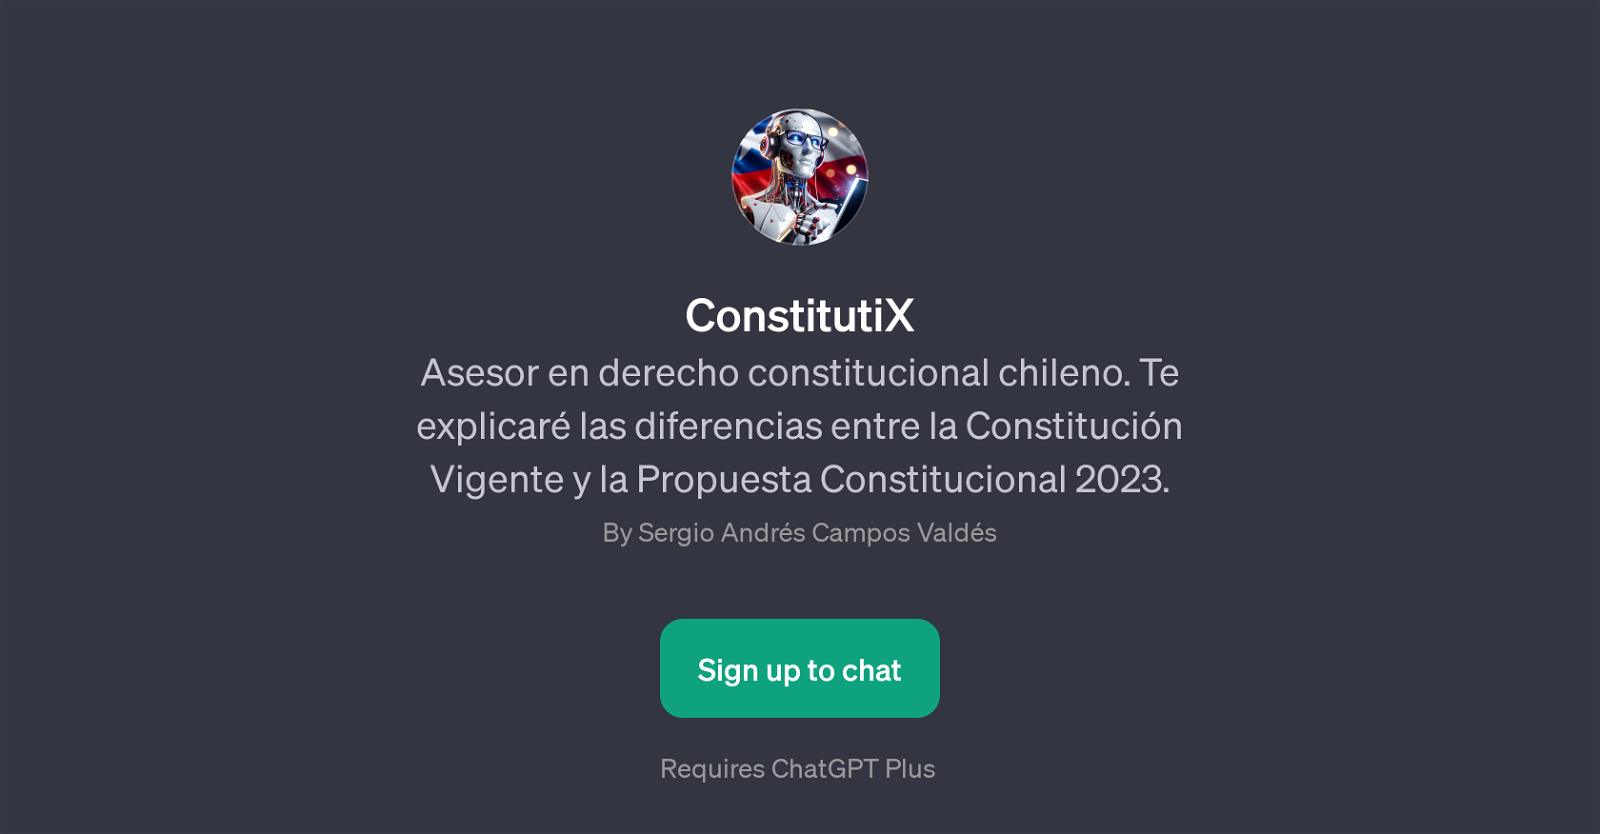 ConstitutiX website